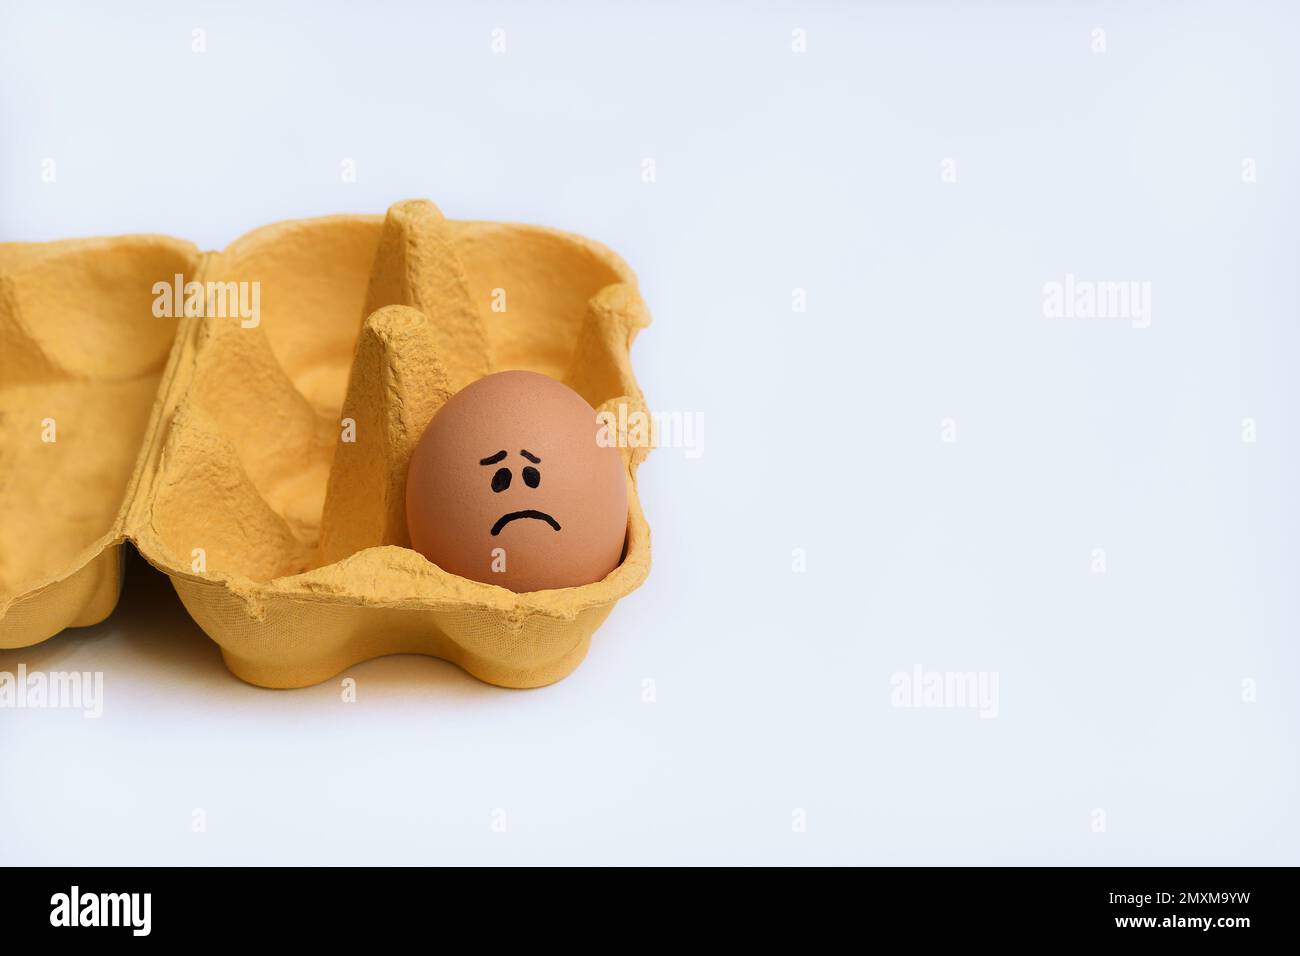 Un seul œuf de poulet au visage triste dans un carton jaune ouvert, une demi-douzaine de cartons d'œufs, à gauche du cadre sur une surface blanche et propre Banque D'Images